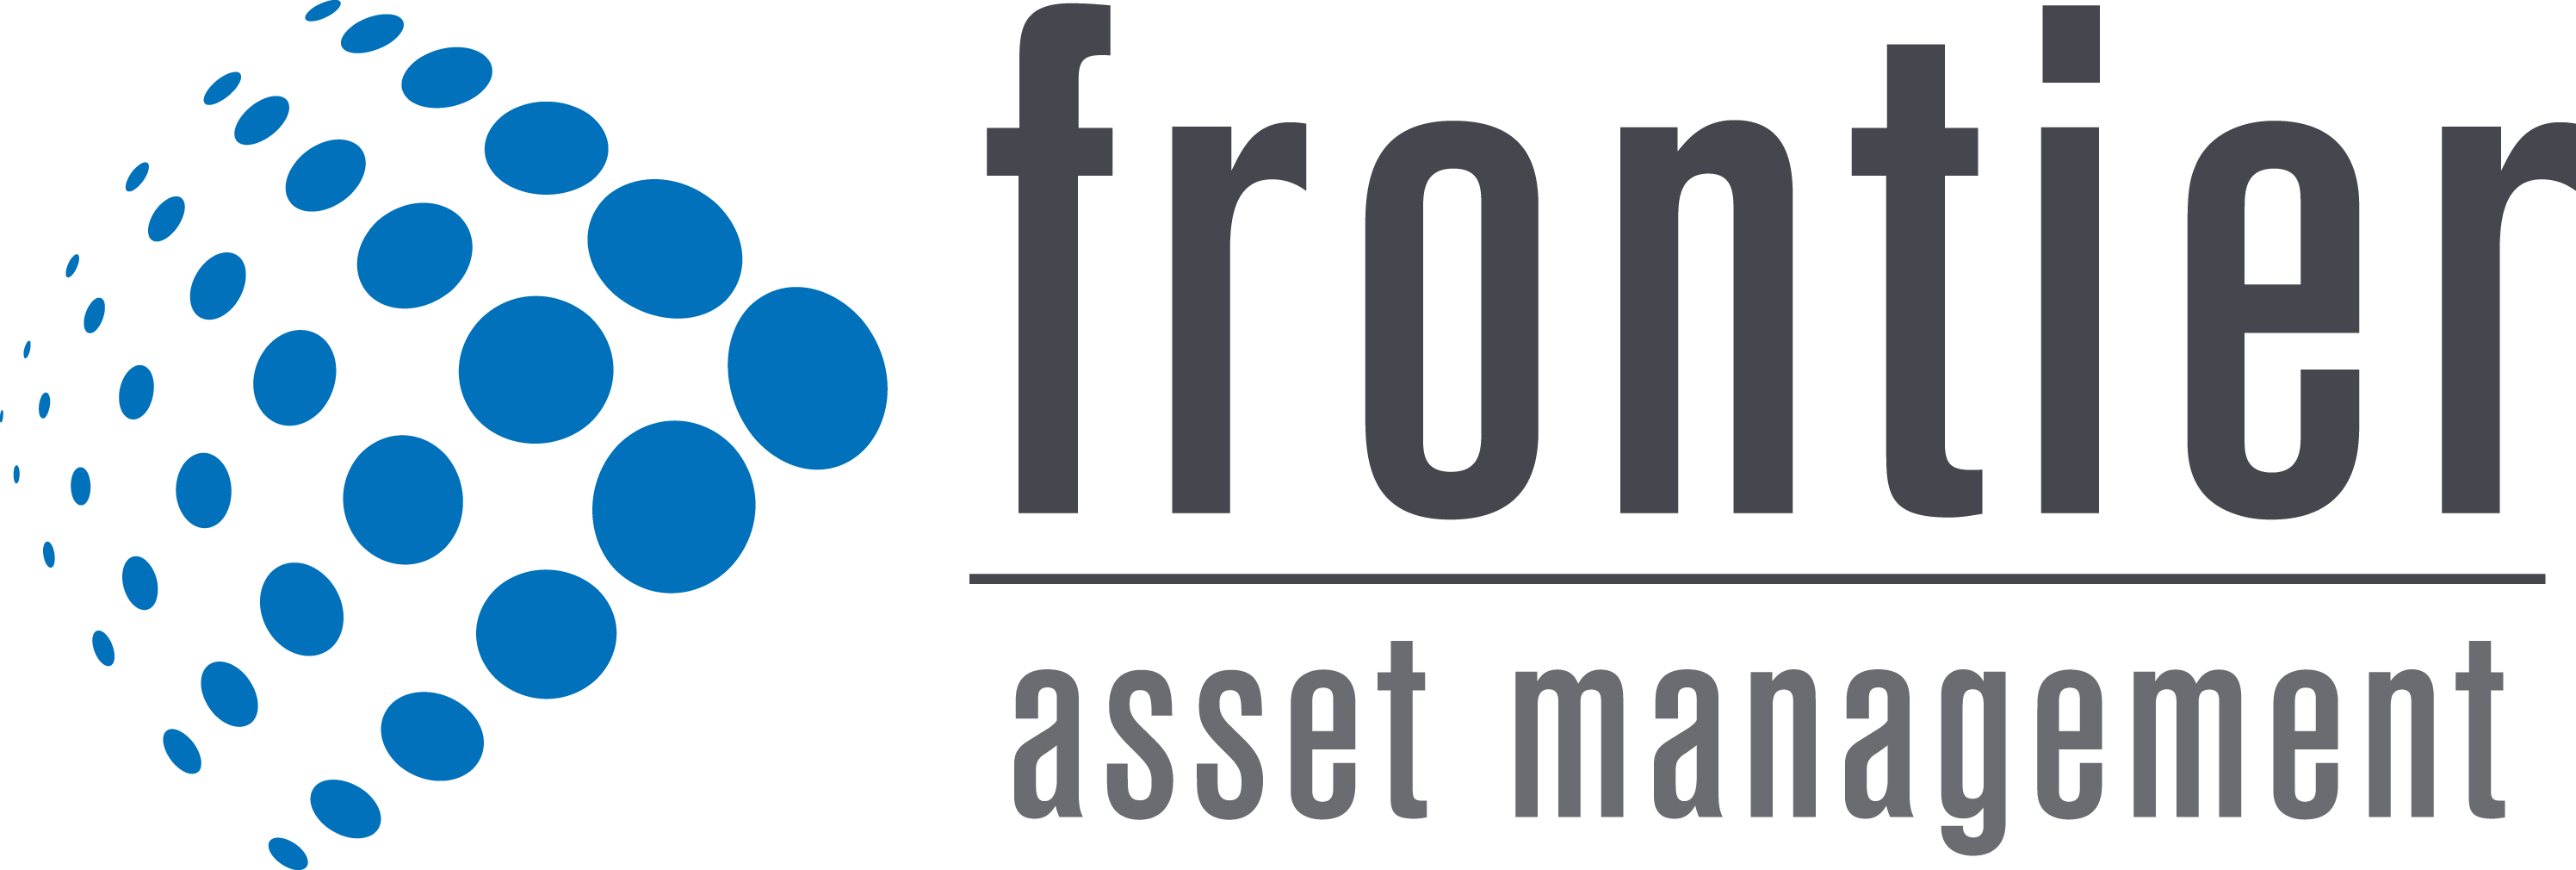 Frontier Asset Management LLC